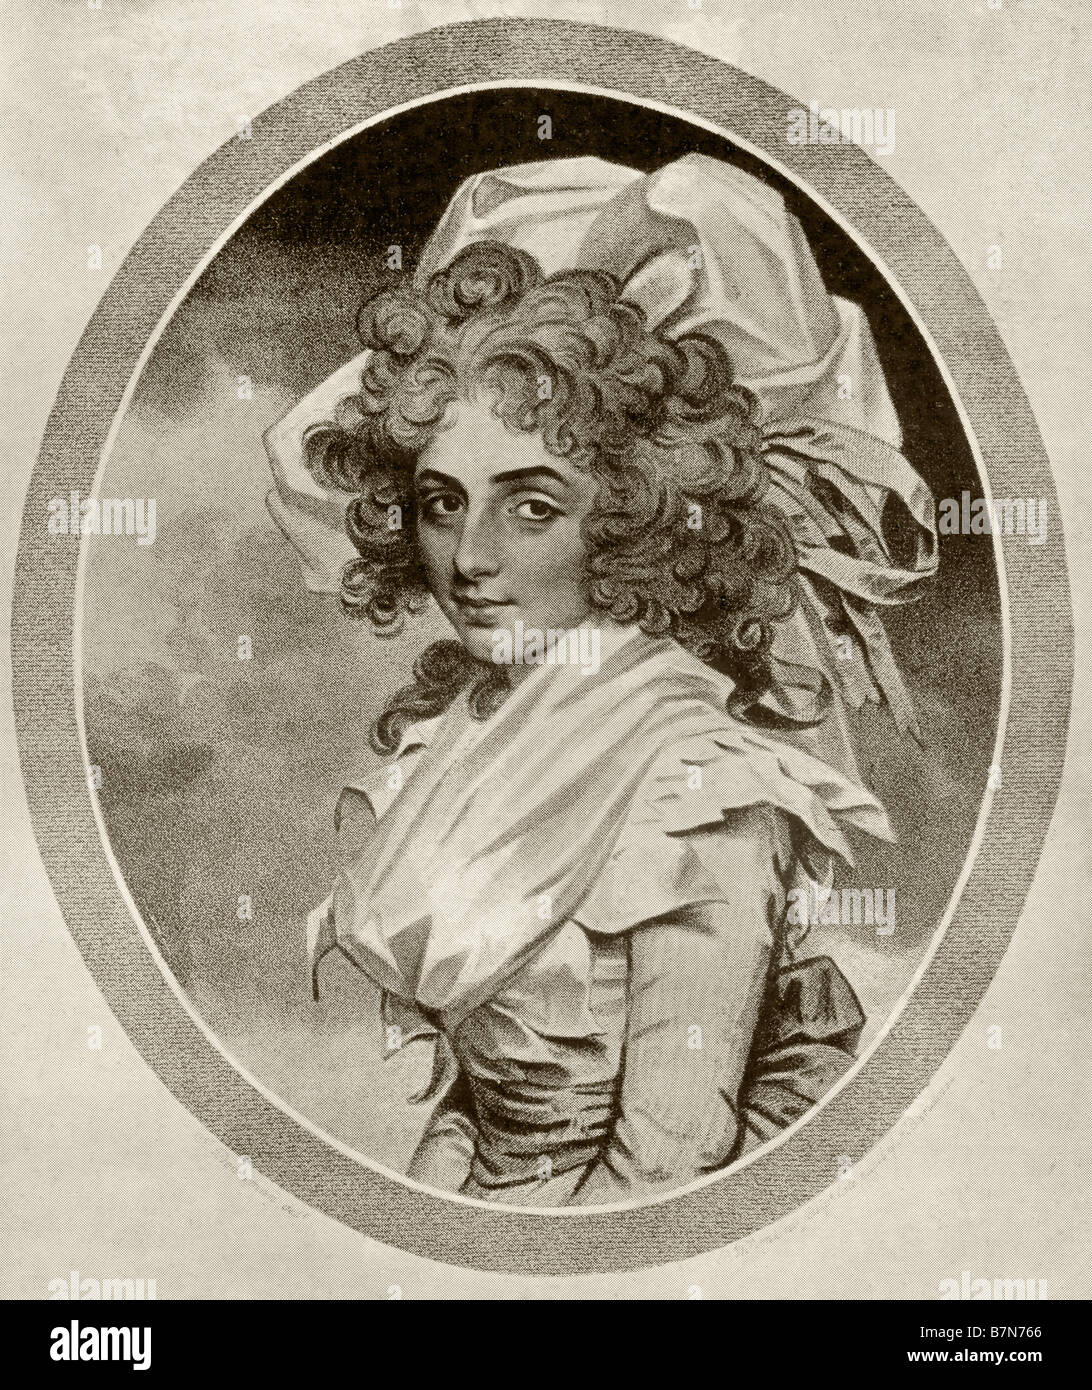 Sarah Siddons, nee Kemble, 1755 - 1831. British actress. Stock Photo